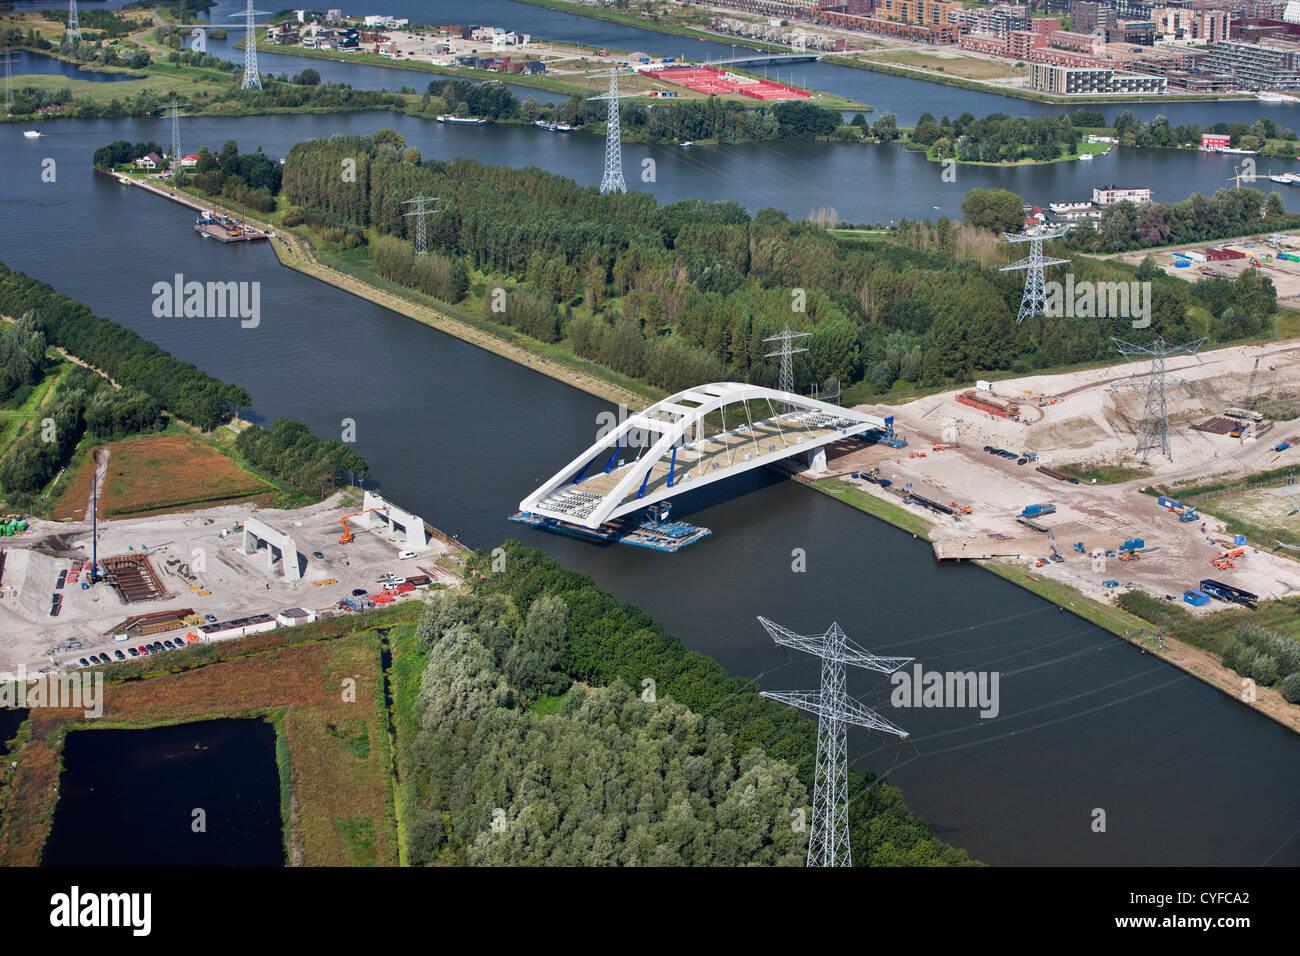 Die Niederlande, Amsterdam, Platzierung von vorgefertigten Brücke über den Kanal namens Amsterdam-Rijn Kanaal. Luft. Stockfoto